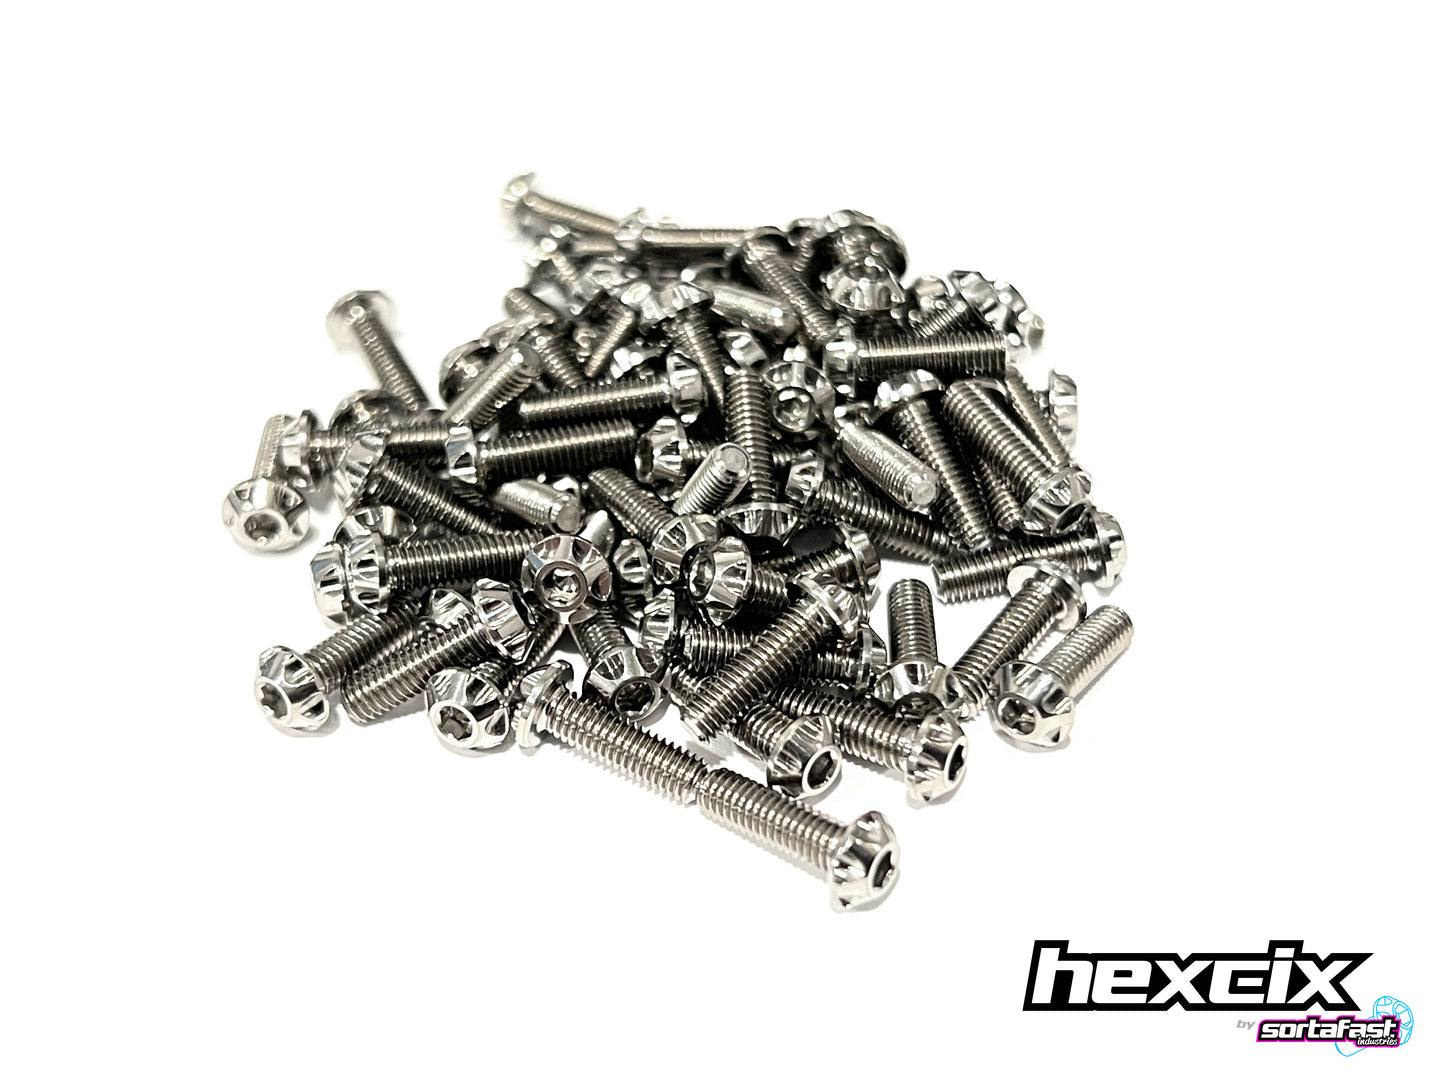 Sortafast Titanium Screws - Hexcix Button Head - 4pk (Metric)